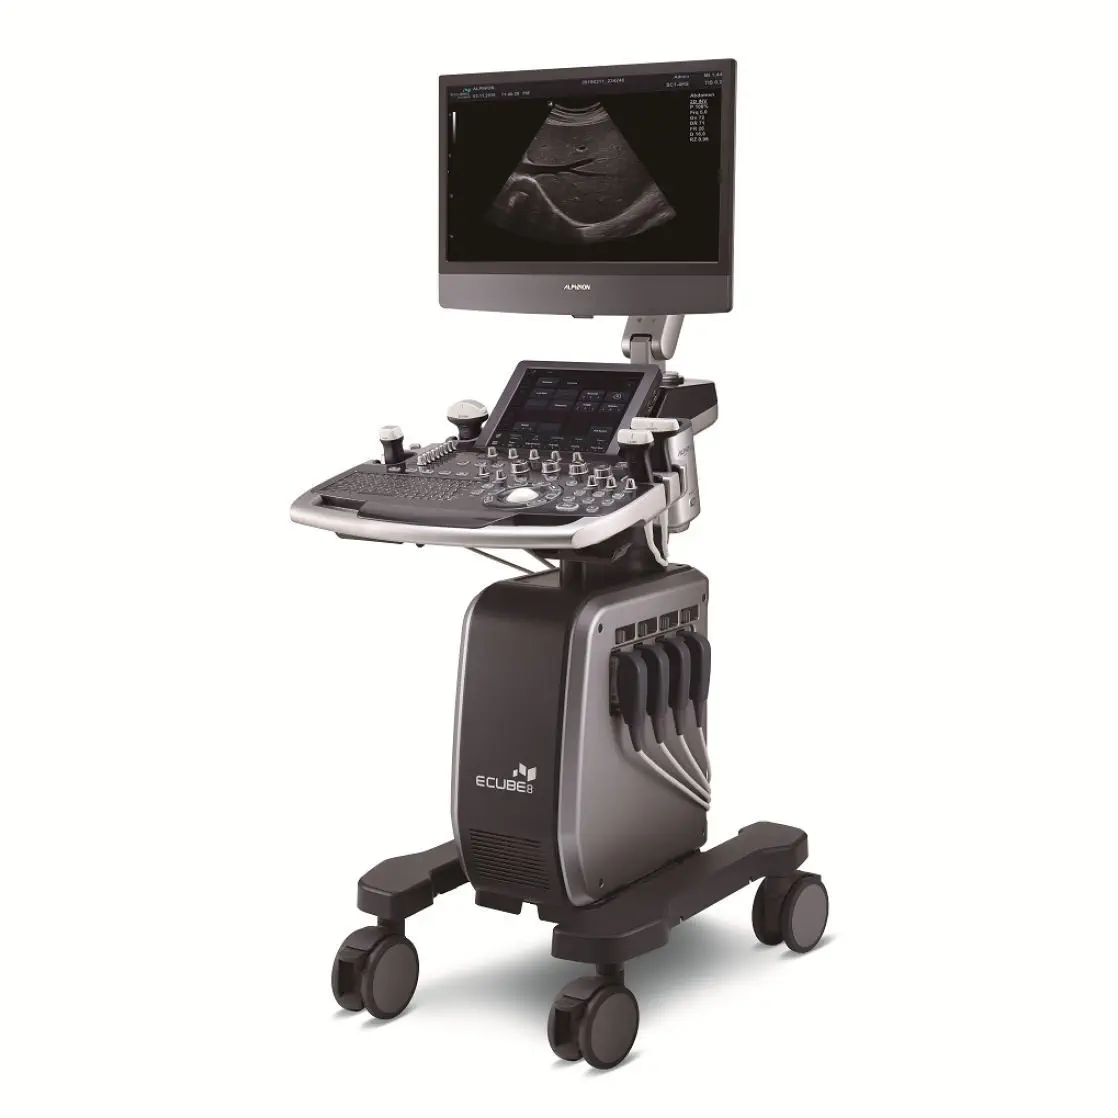 เครื่องตรวจอวัยวะภายในด้วยคลื่นเสียงความคมชัดสูง  On-platform ultrasound system E-CUBE 8 Series  Alpinion